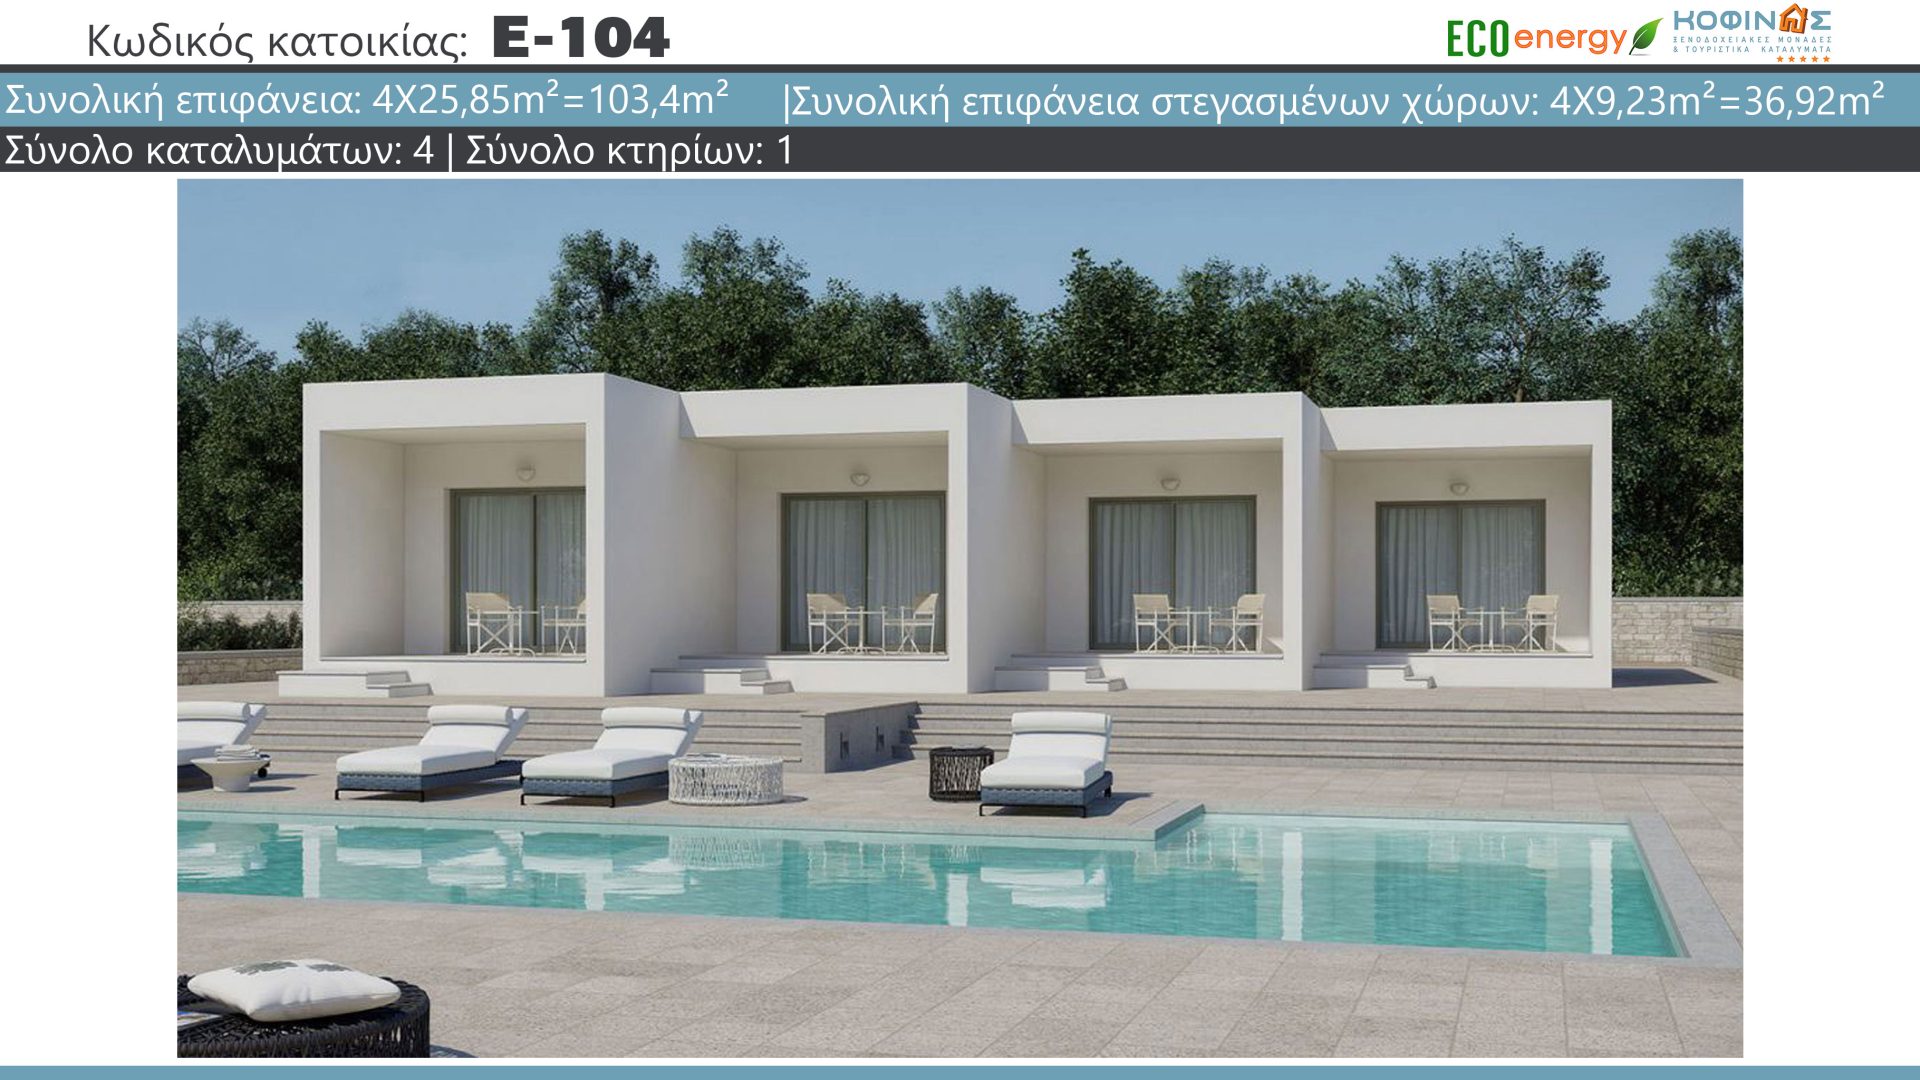 Συγκρότημα Κατοικιών E-104, συνολικής επιφάνειας 4 x 25.85=103.4 τ.μ., συνολική επιφάνεια στεγασμένων χώρων 36.92 m²